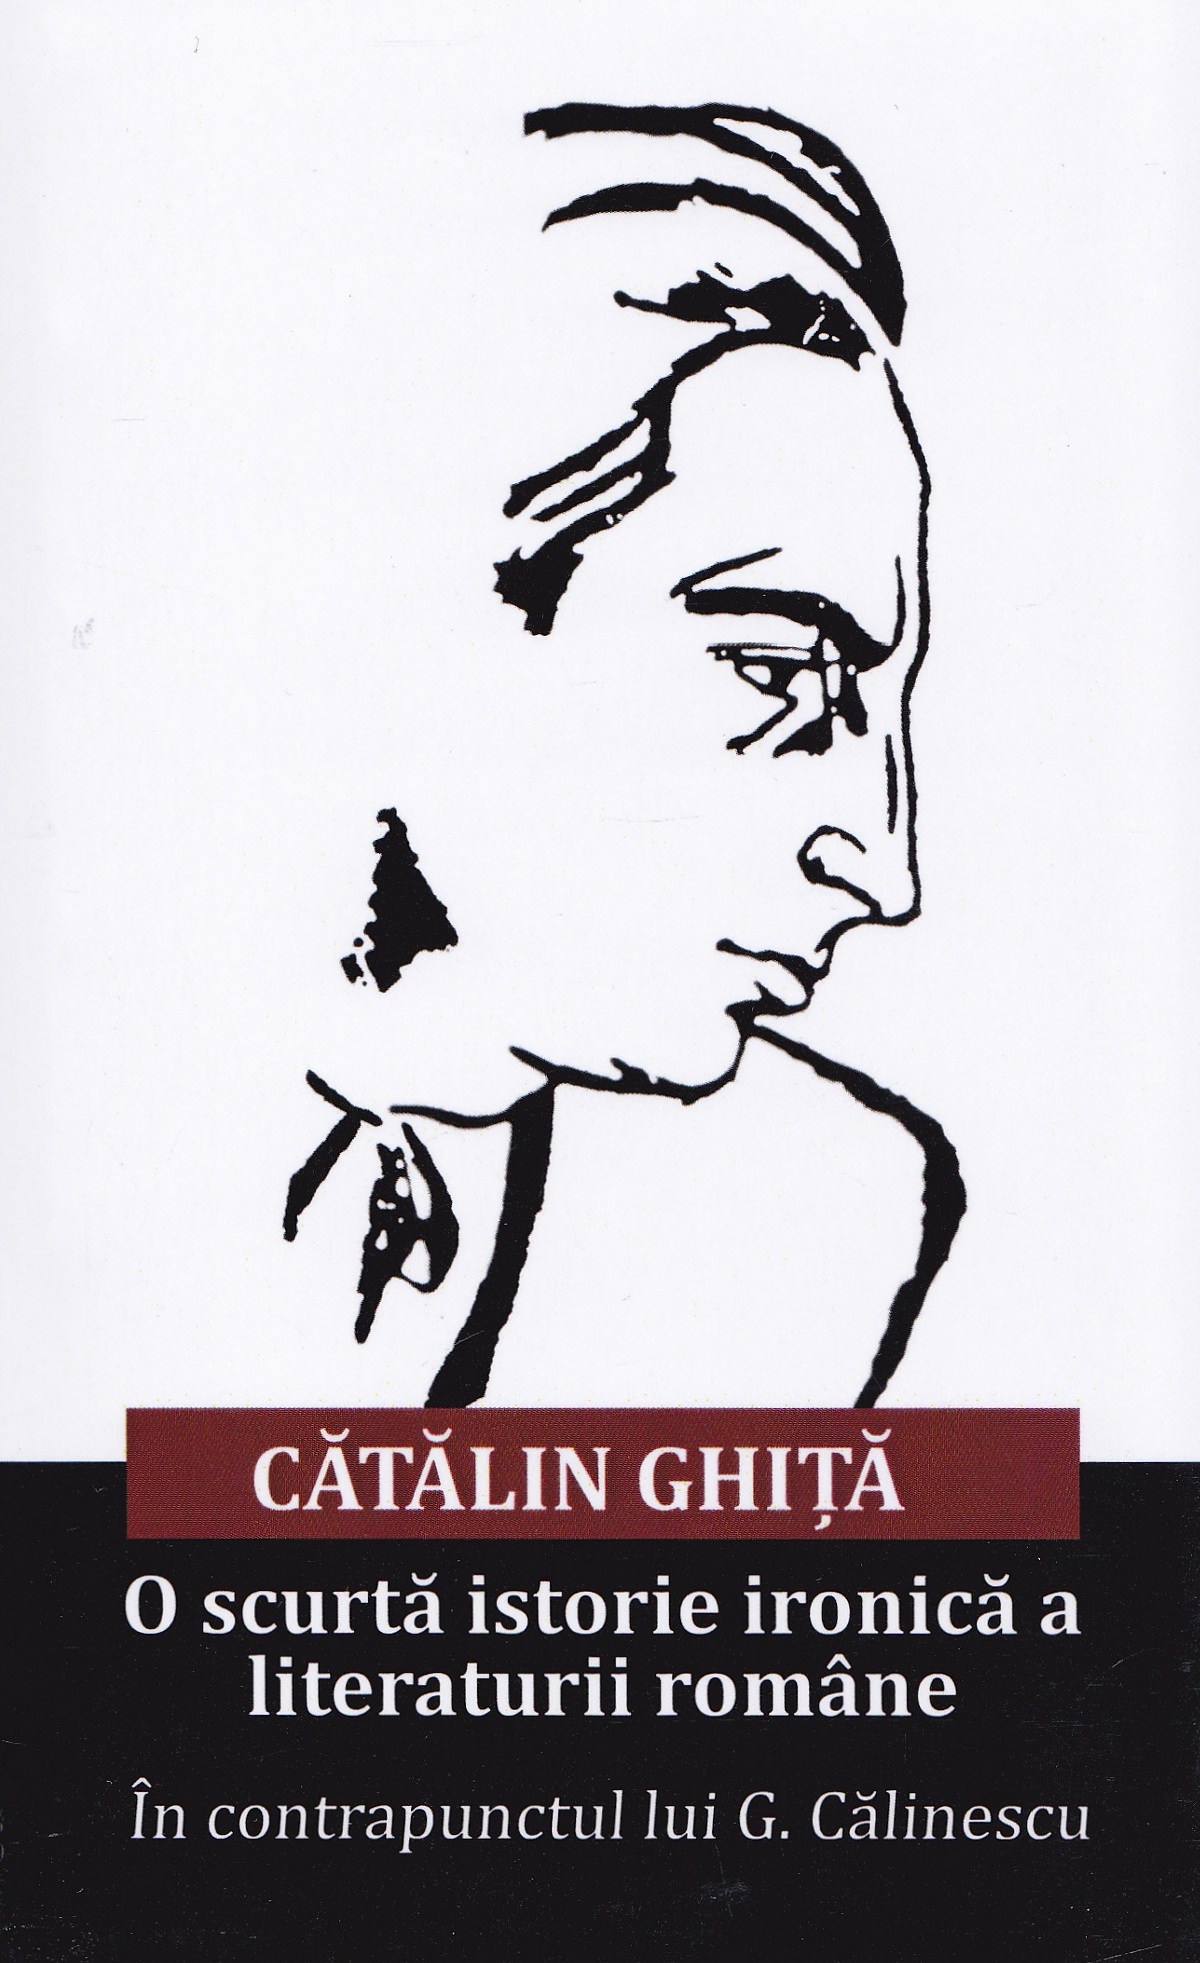 O scurta istorie ironica a literaturii romane - Catalin Ghita